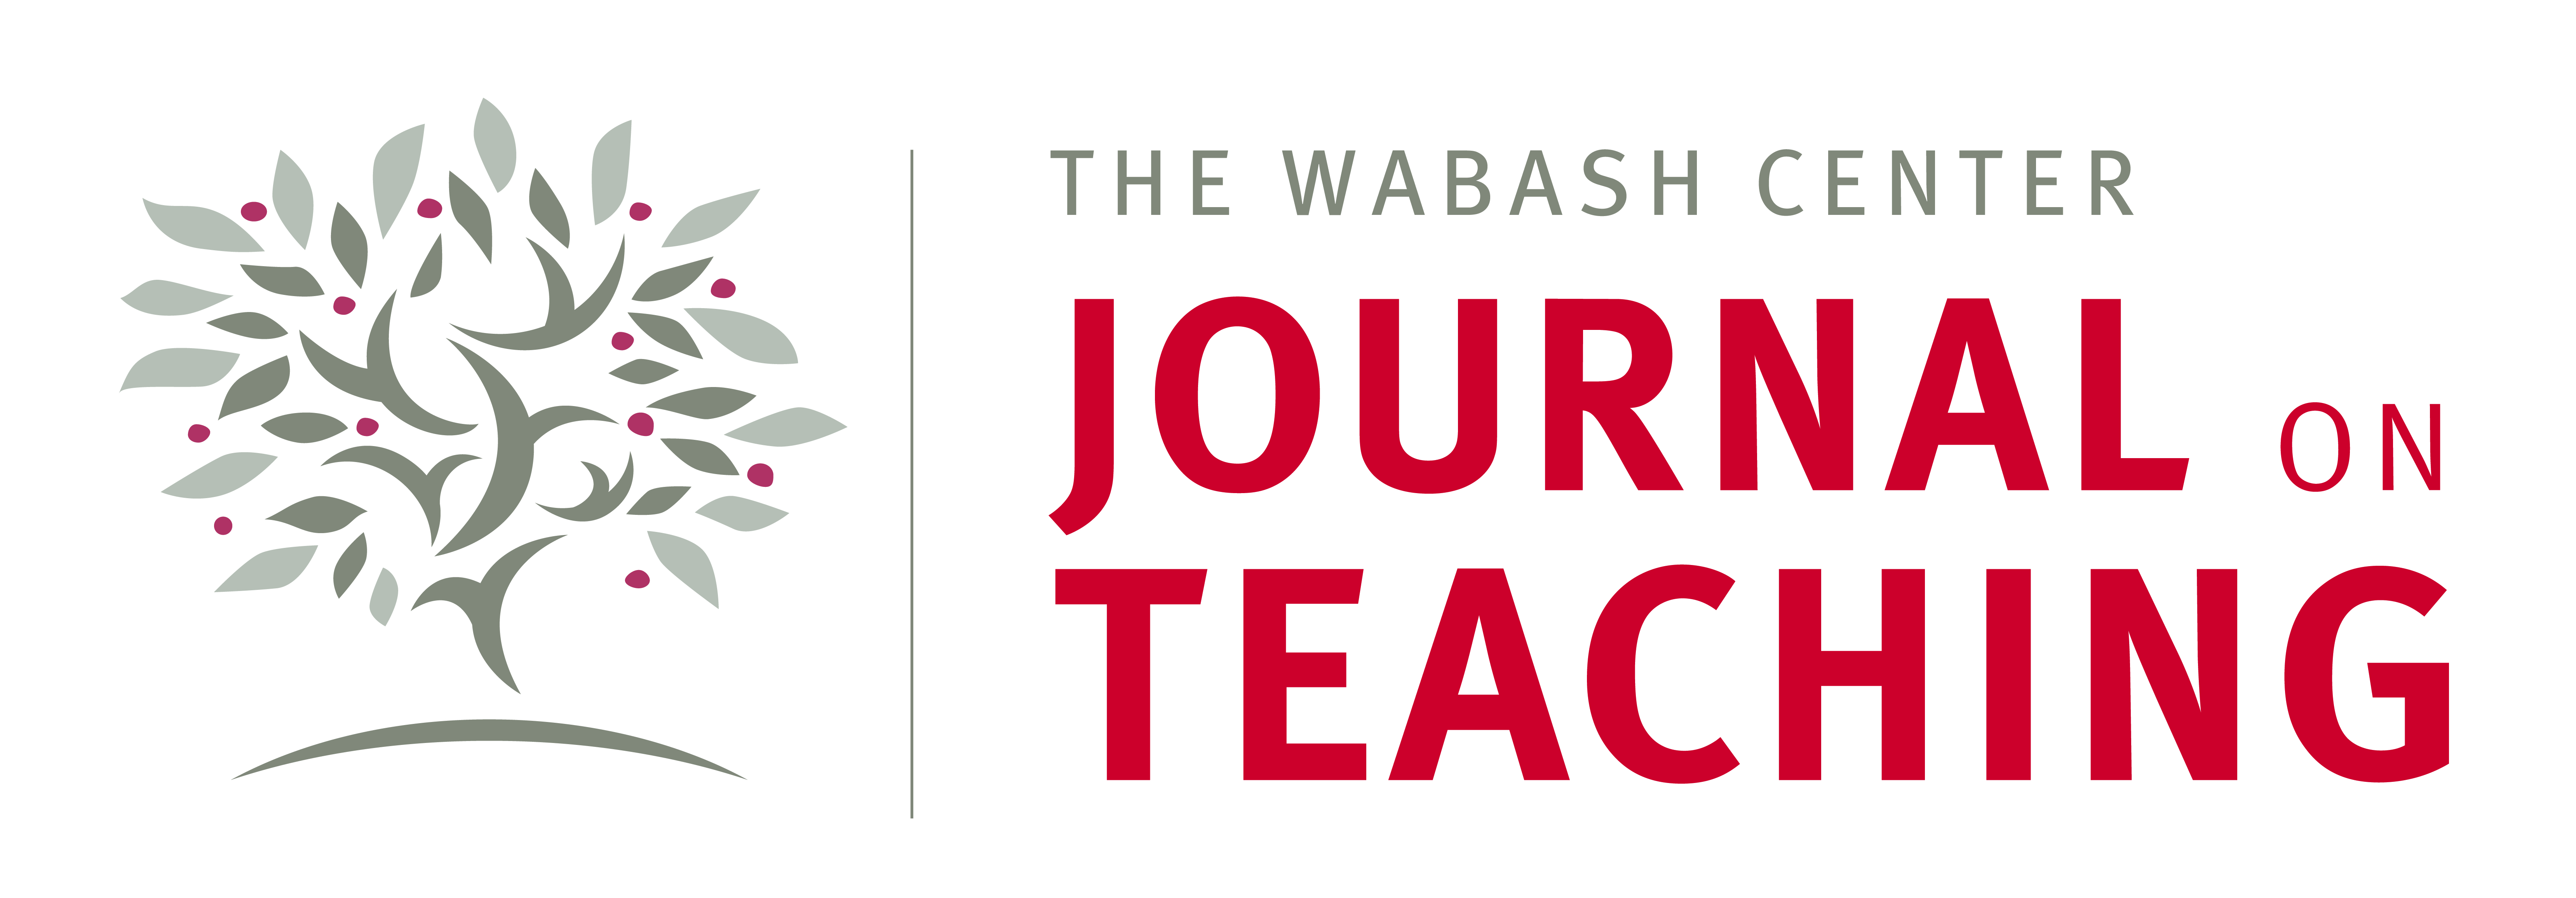 Wabash Center Journal on Teaching logo